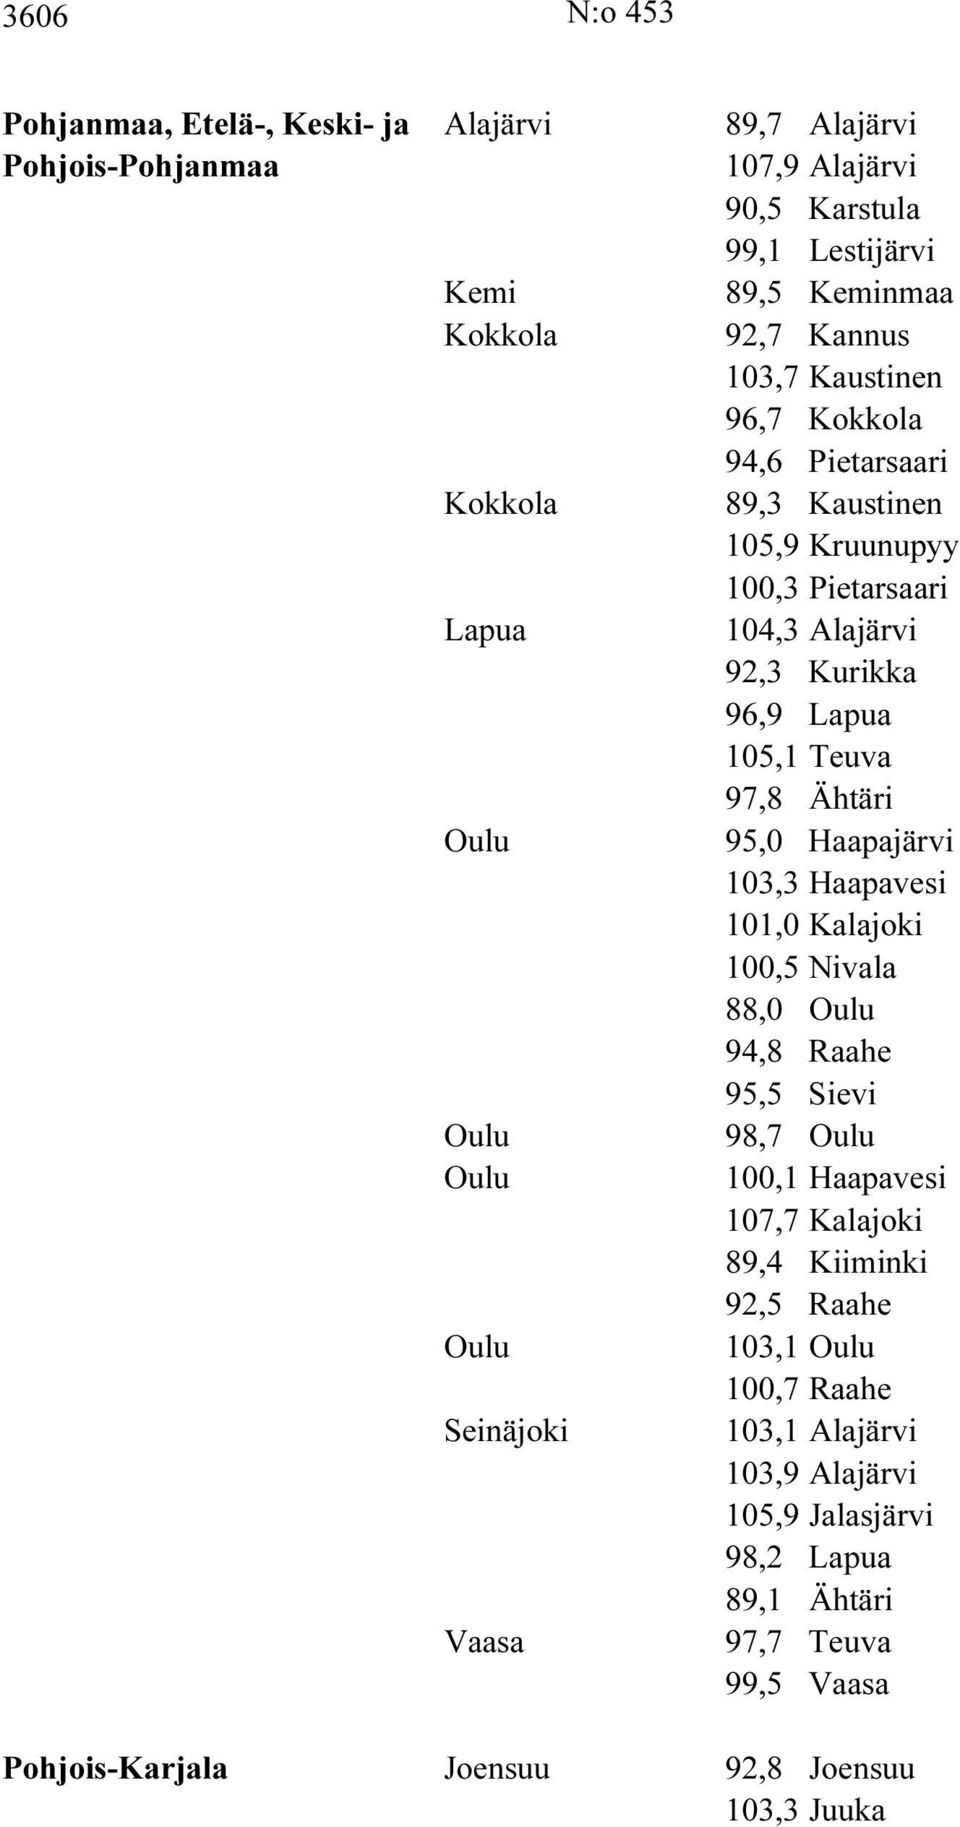 95,0 Haapajärvi 103,3 Haapavesi 101,0 Kalajoki 100,5 Nivala 88,0 Oulu 94,8 Raahe 95,5 Sievi Oulu 98,7 Oulu Oulu 100,1 Haapavesi 107,7 Kalajoki 89,4 Kiiminki 92,5 Raahe Oulu